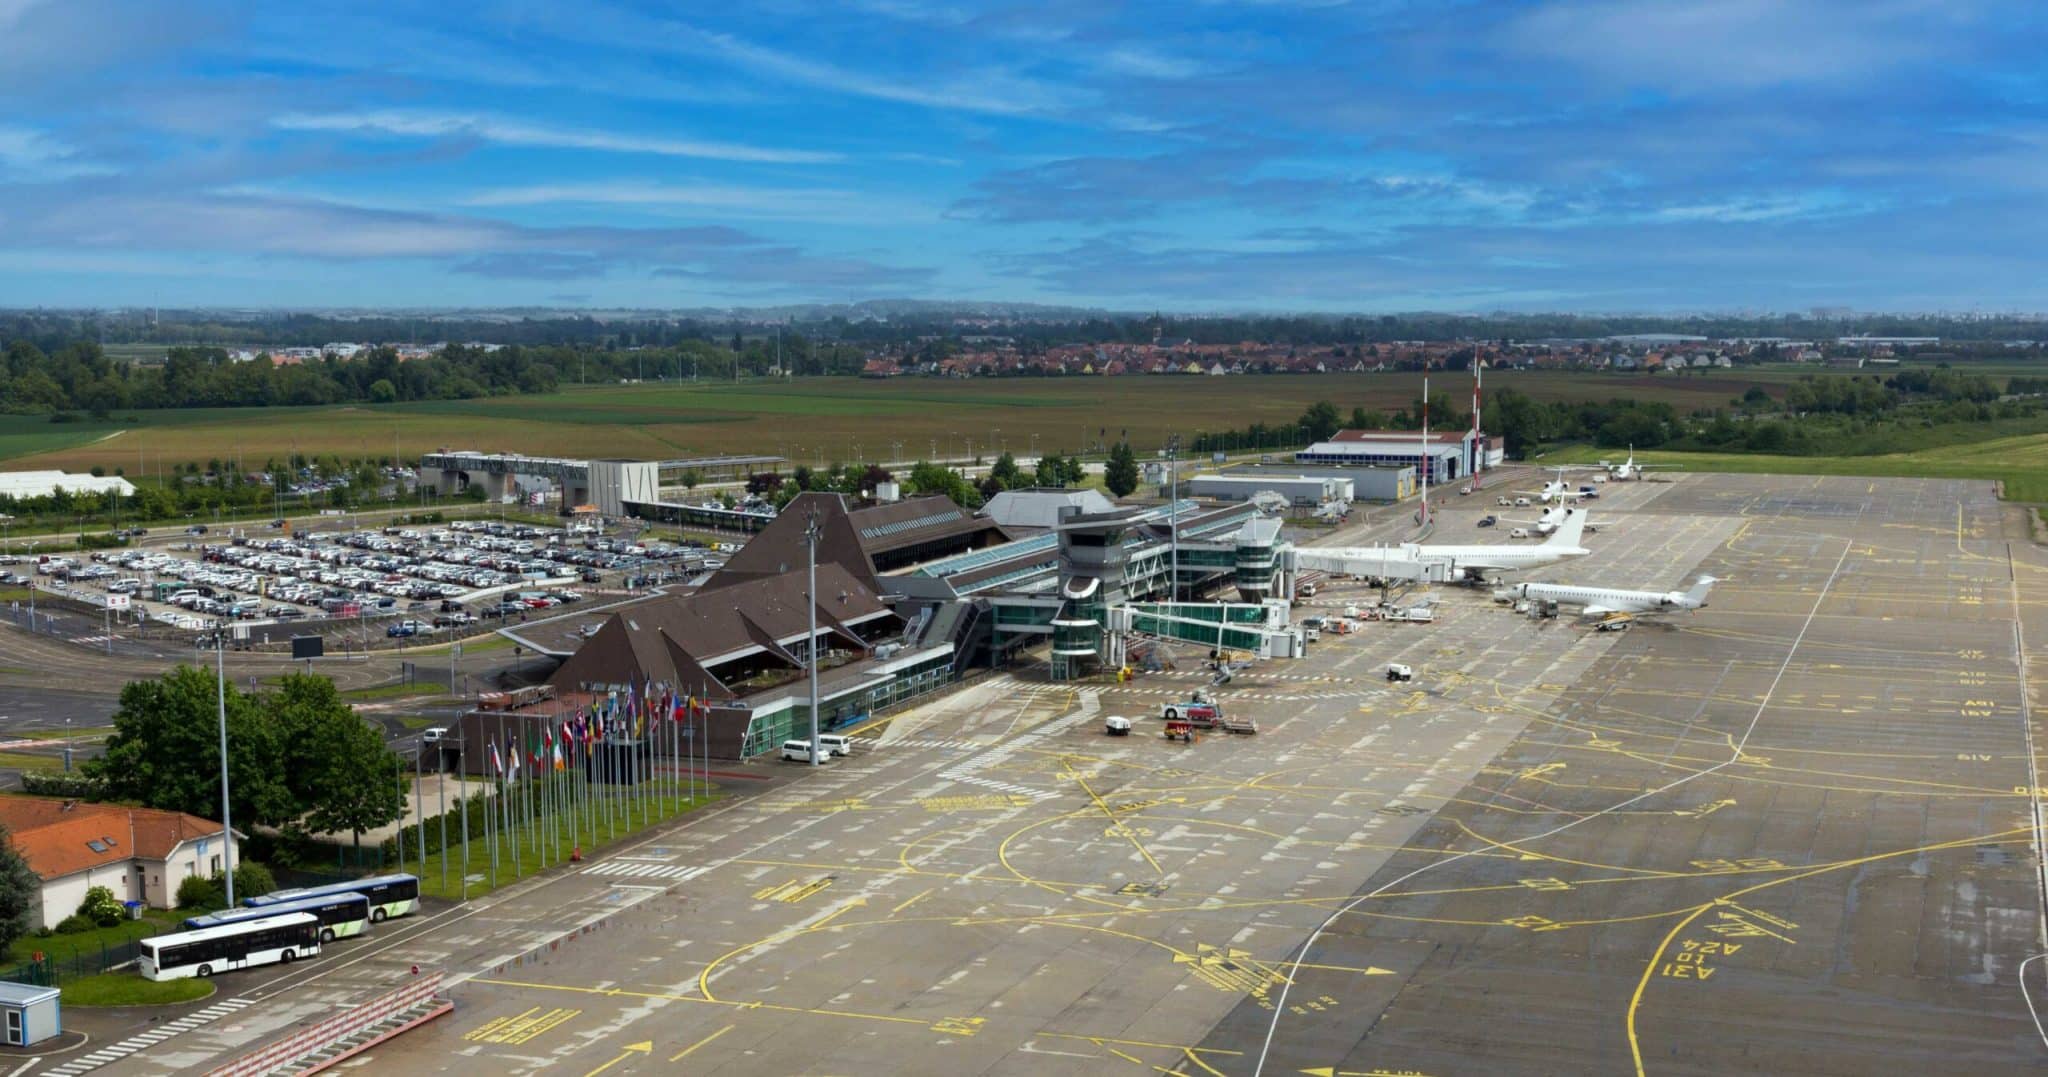 Aeroporto de Estrasburgo fechado de 14 de março a 14 de abril para renovação da pista